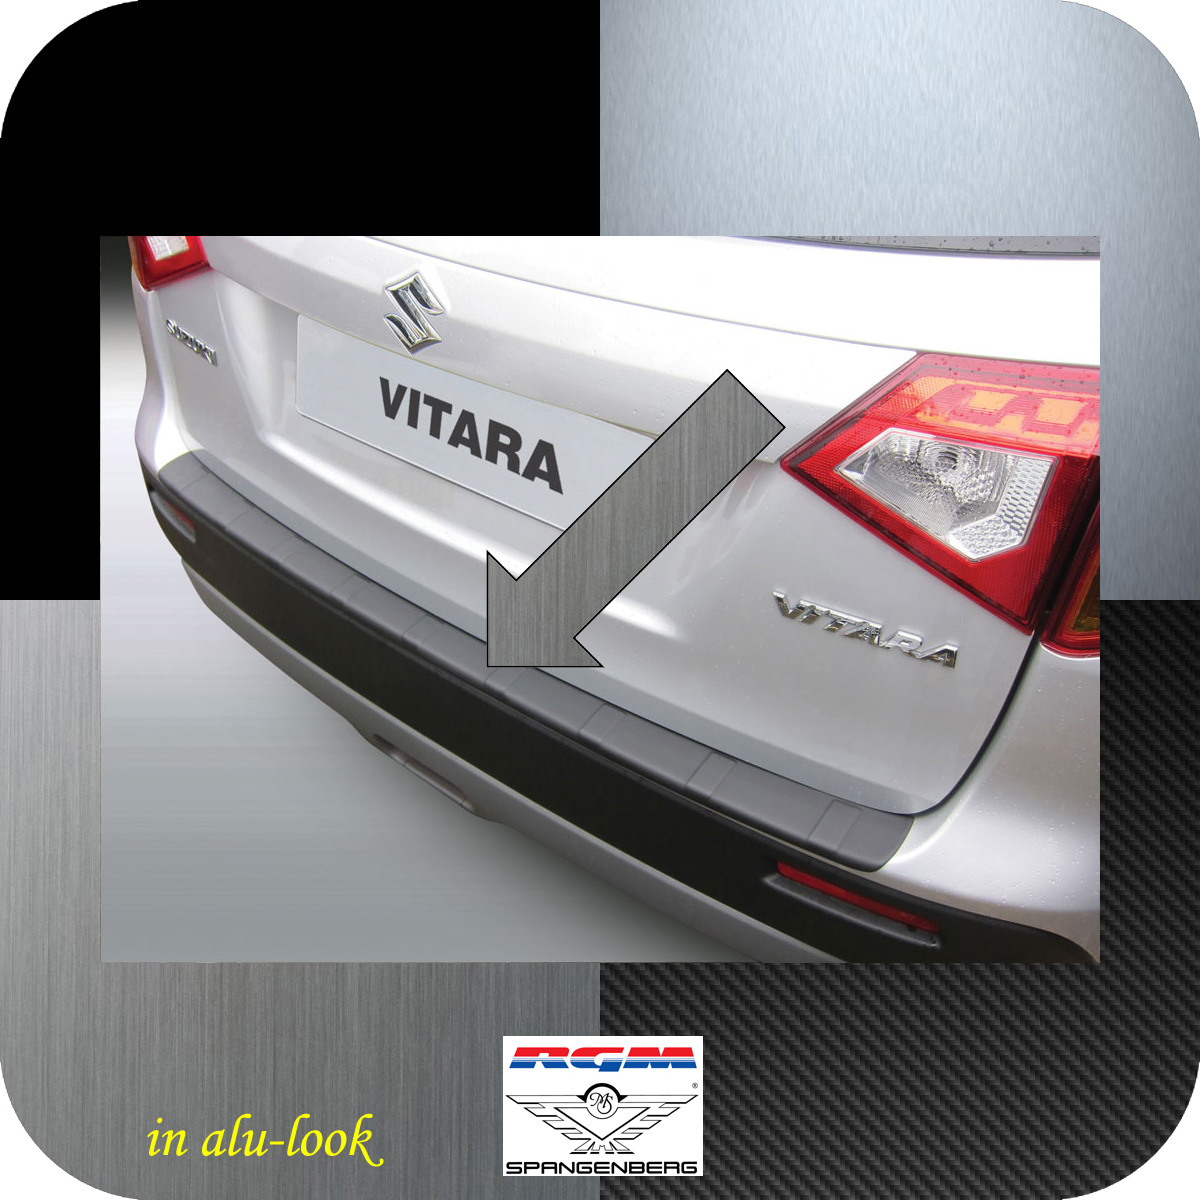 Ladekantenschutz Alu-Look gerippt Suzuki Vitara SUV ab Baujahr 03.2015- 3504995